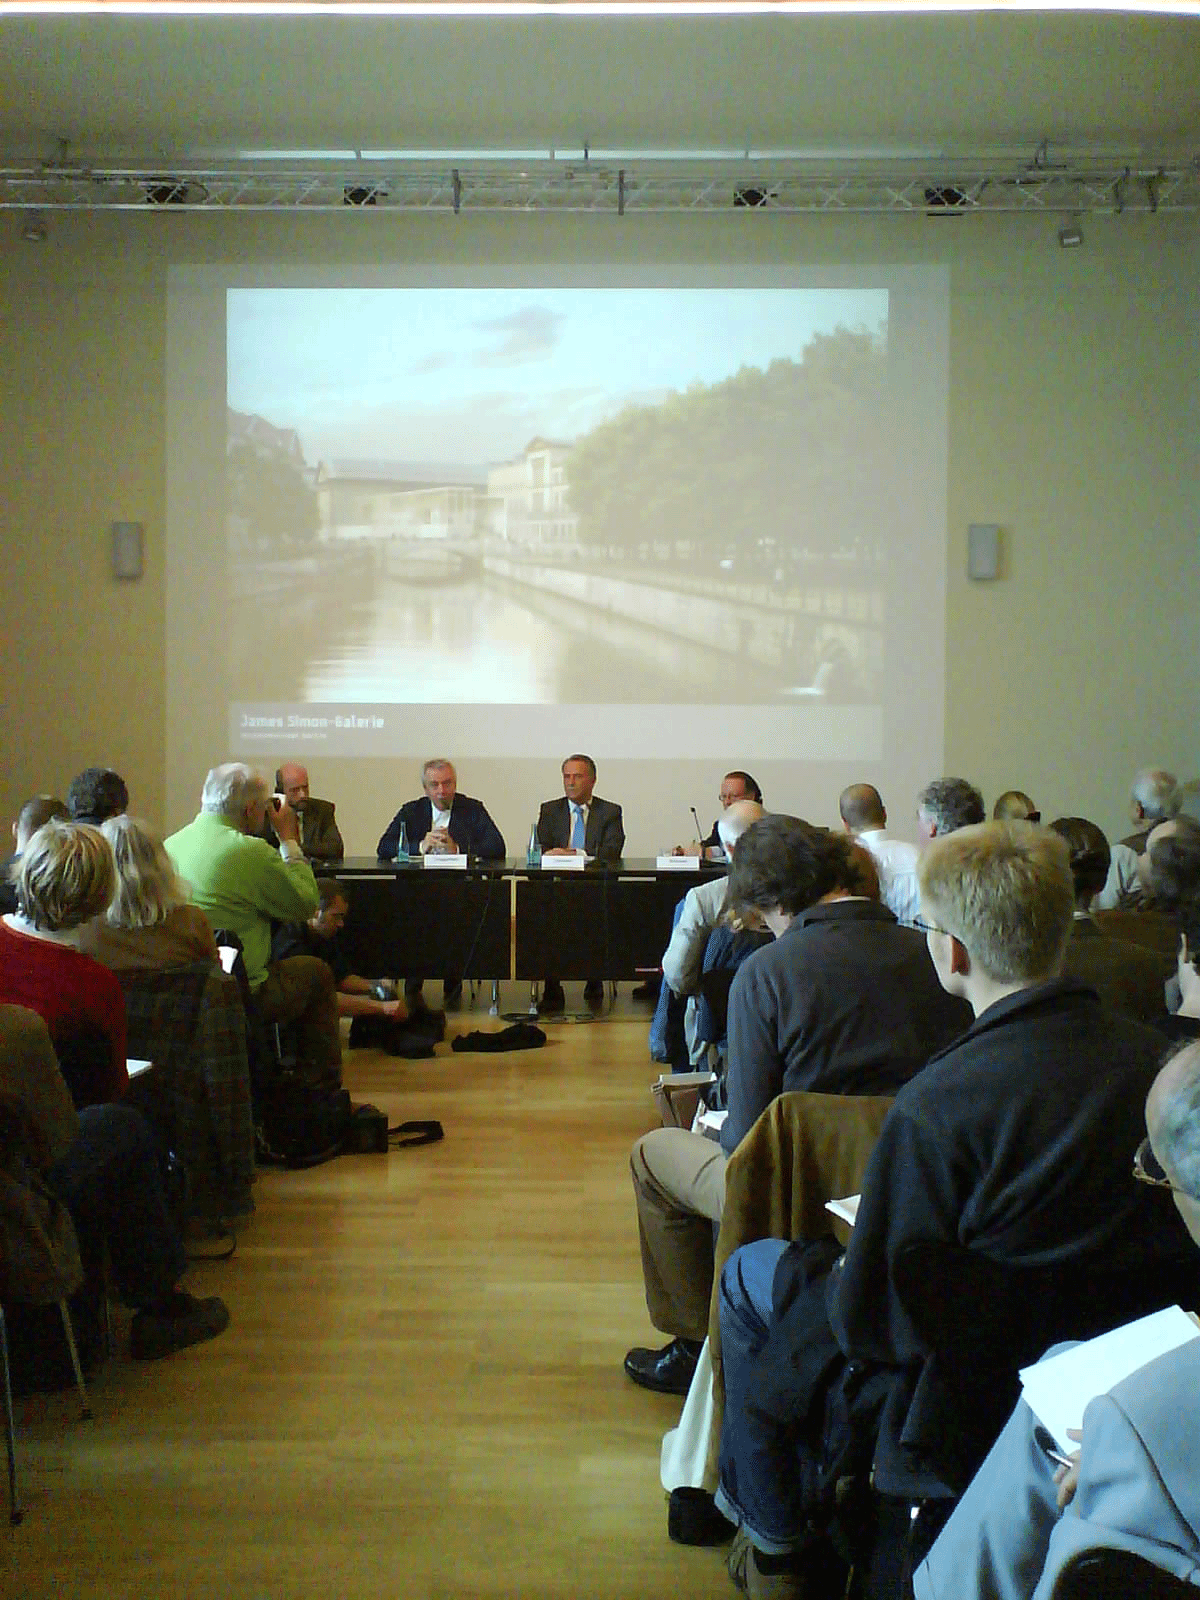 David Chipperfield, Klaus-Dieter Lehmann und Peter-Klaus Schuster stellen den Entwurf für die James Simon Galerie vor